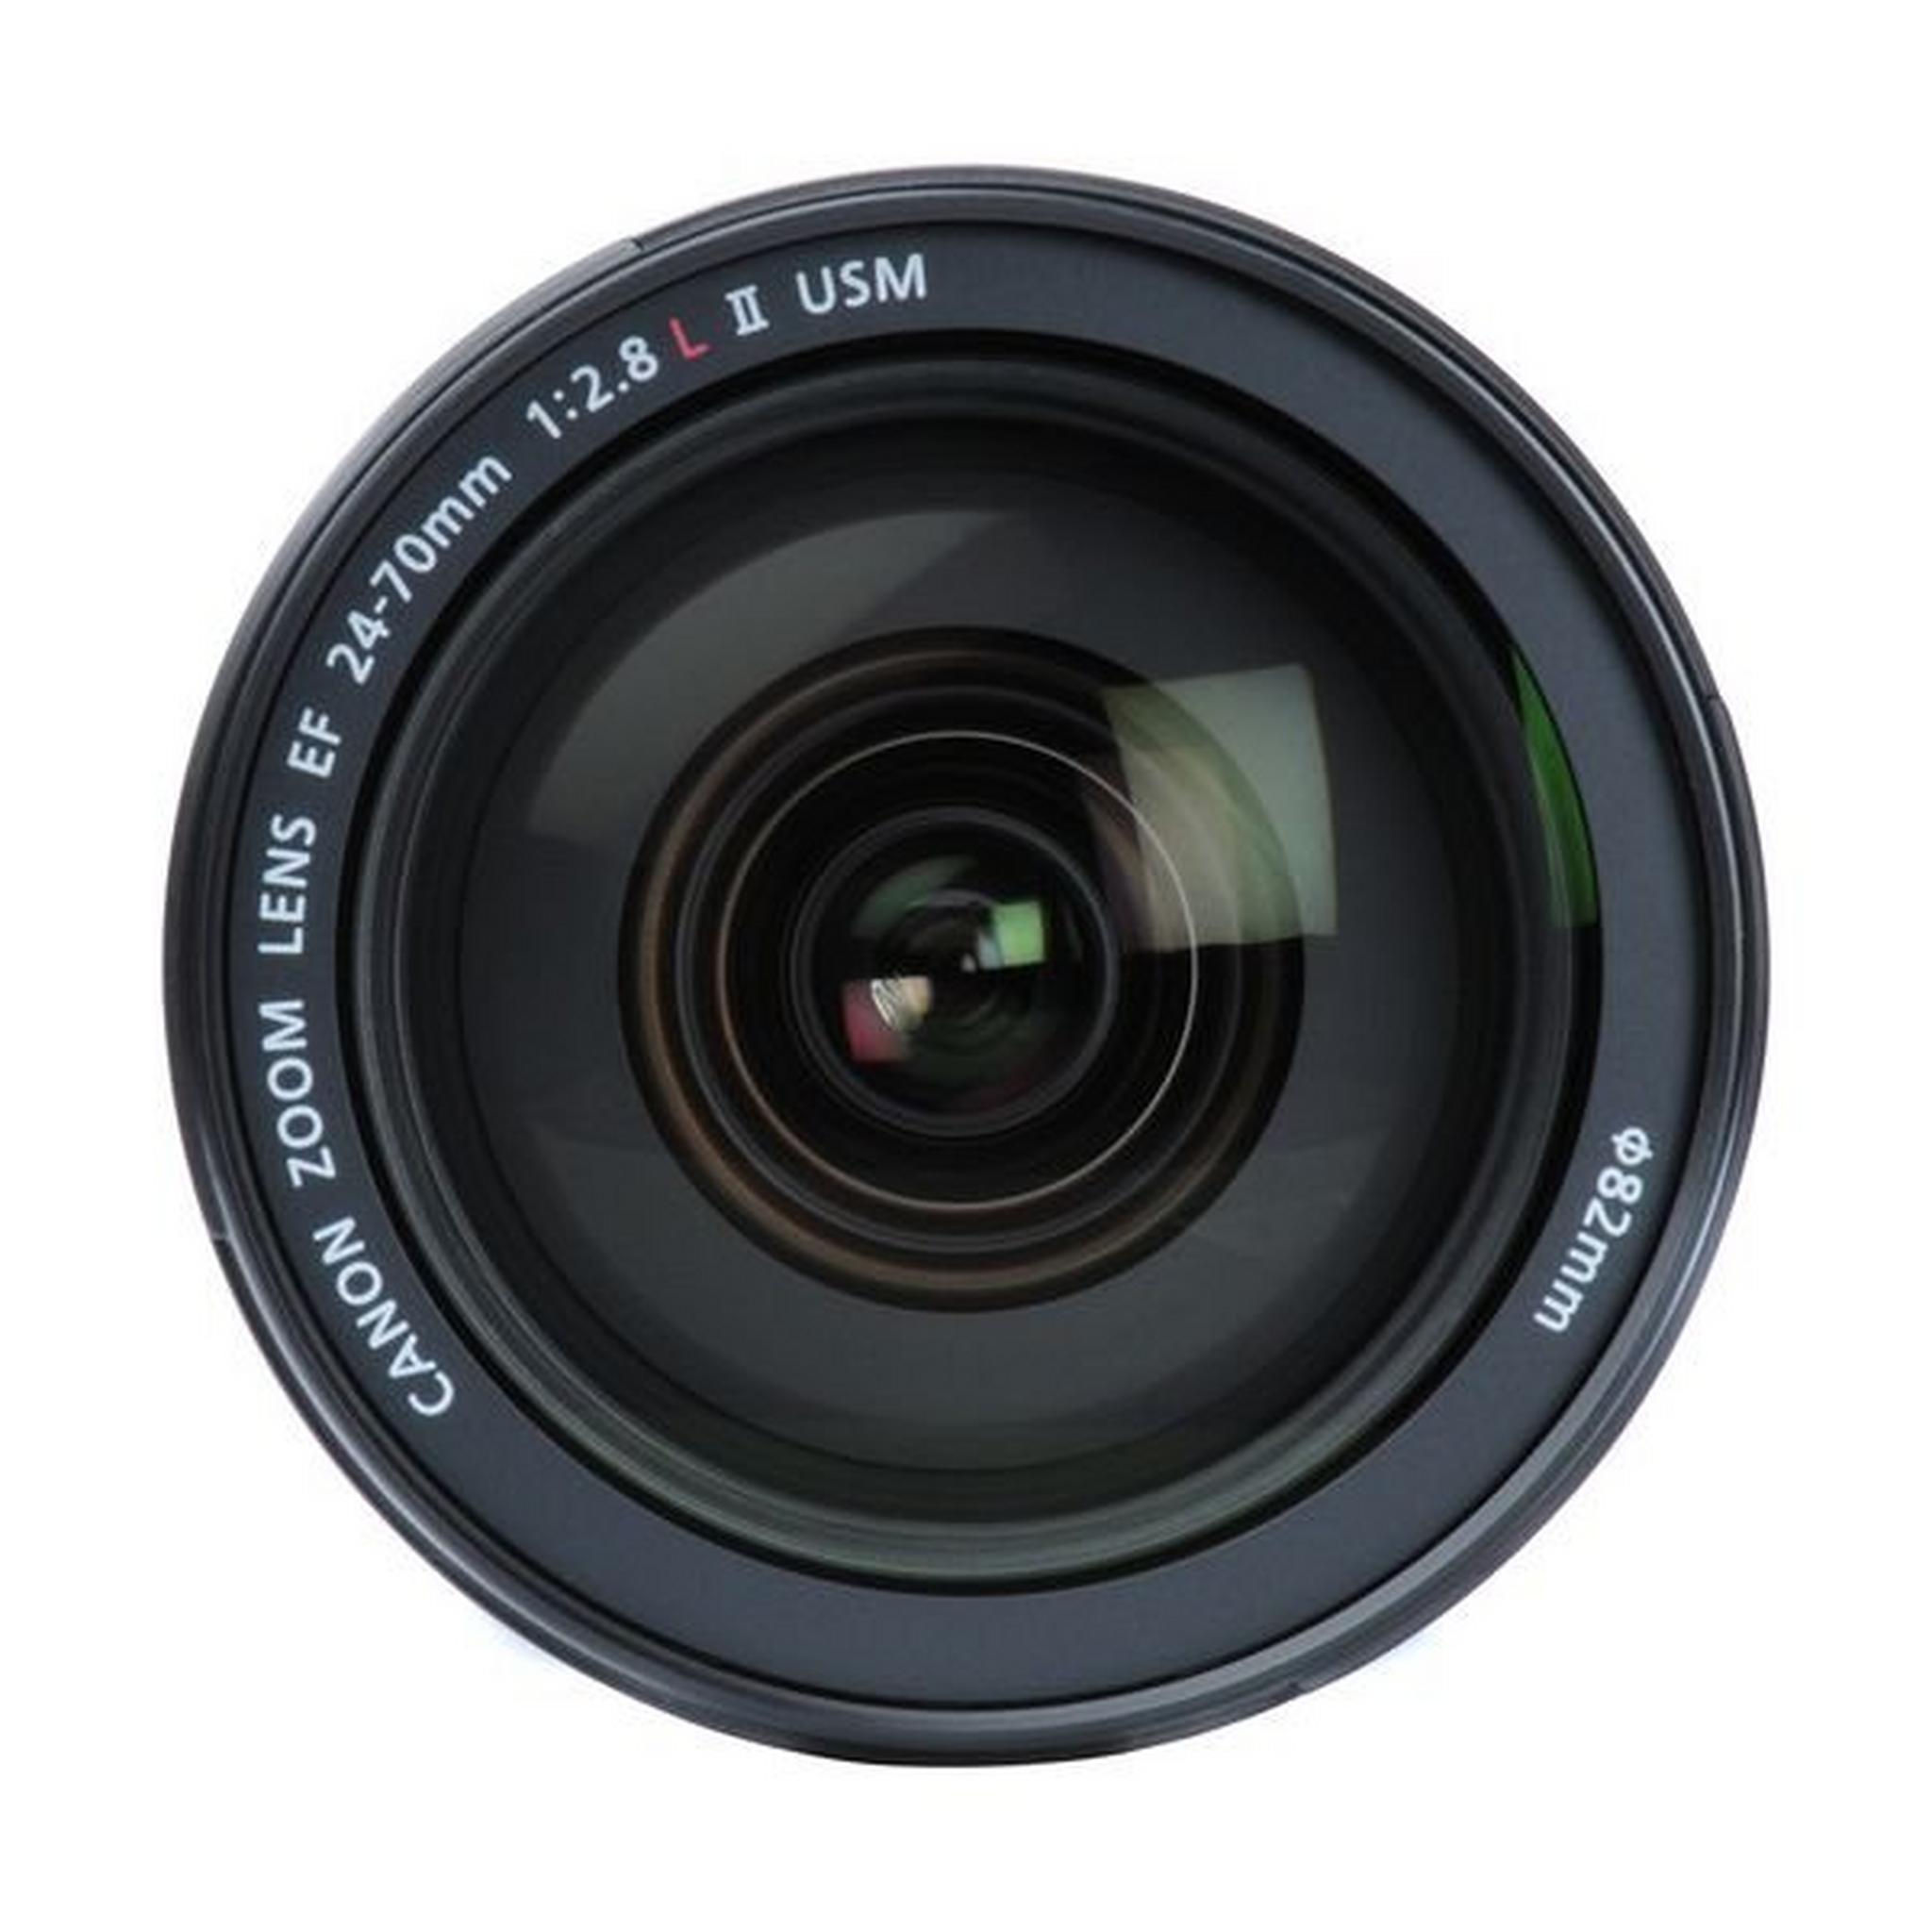 Canon EF 24-70mm F/2.8L USM Lens